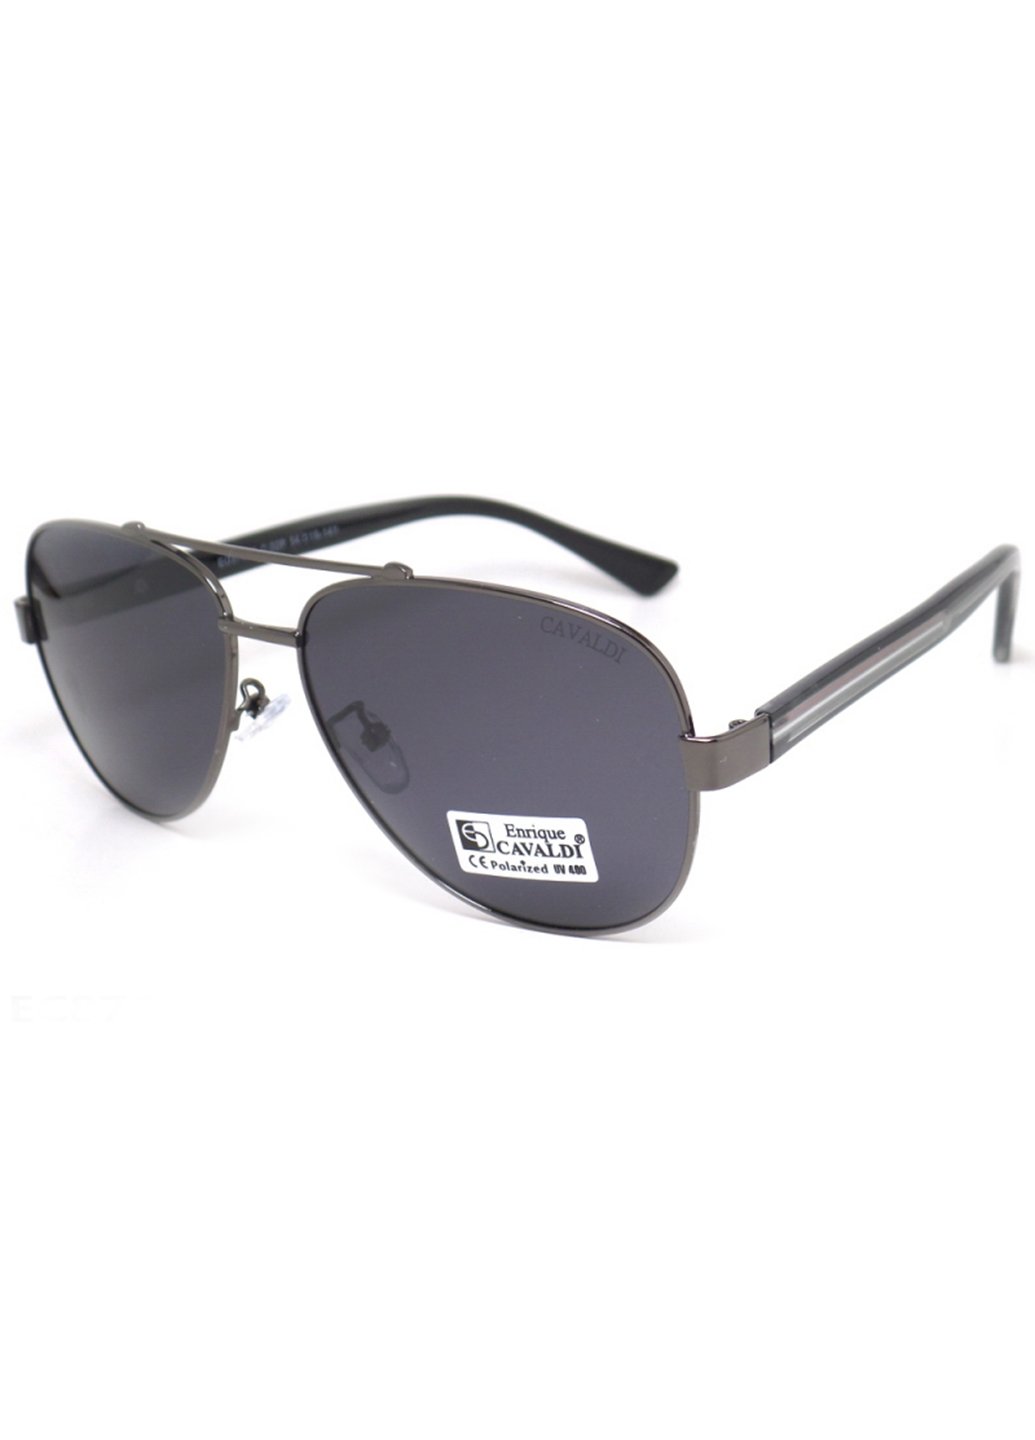 Купить Мужские солнцезащитные очки Enrique Cavaldi EC87050 150004 - Черный в интернет-магазине